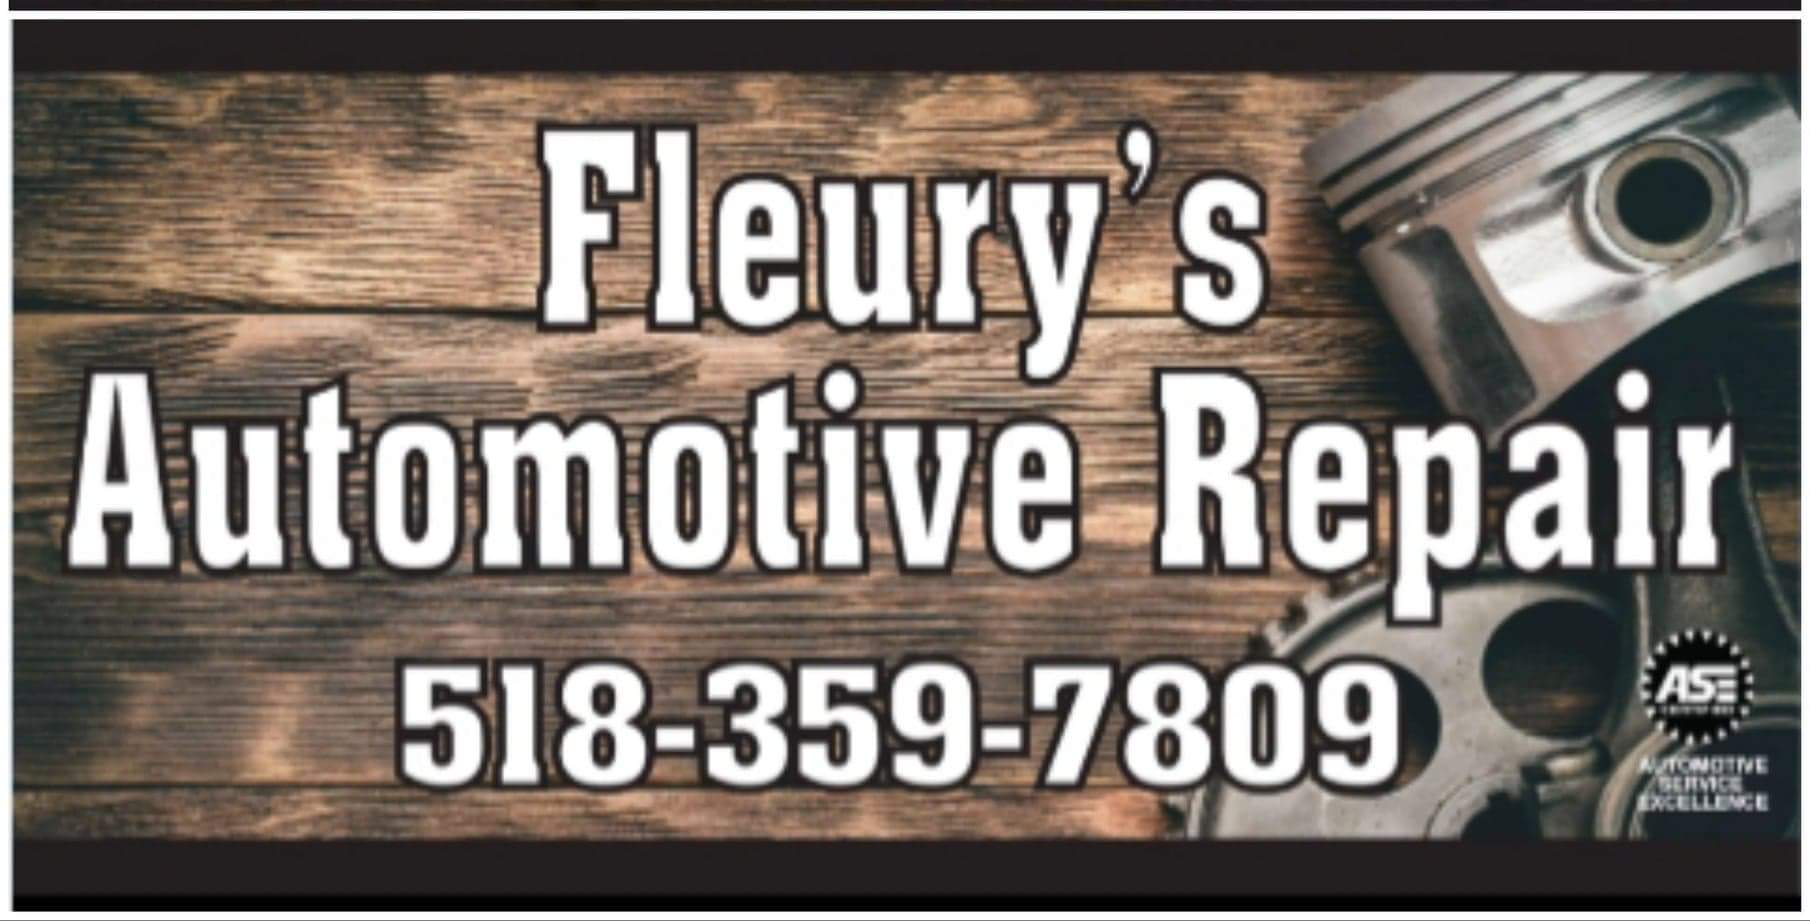 Fleury's Automotive Repair